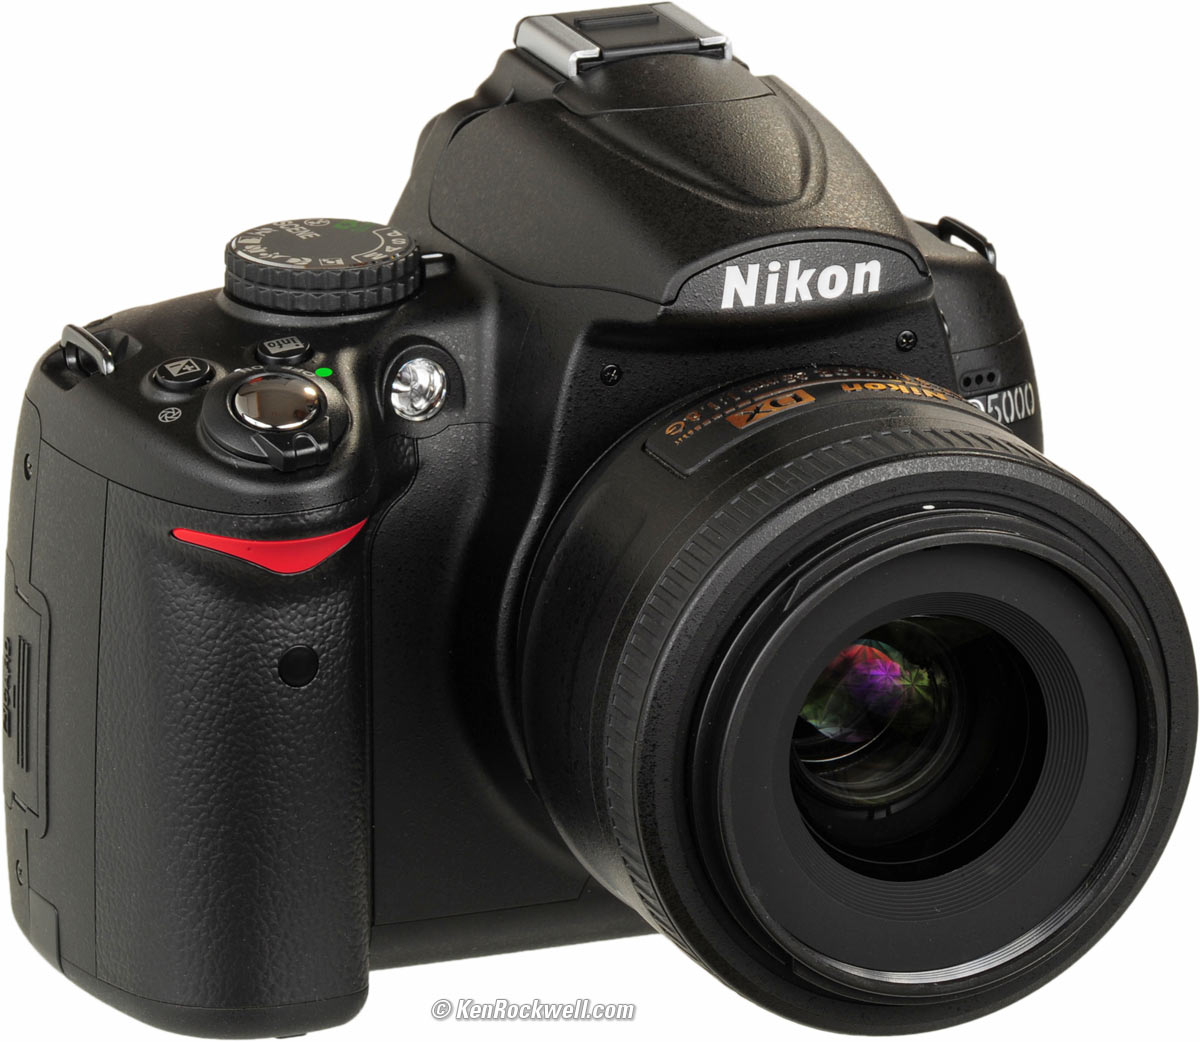 Nikon D5000 Digital SLR Camera with18-55 lens large image 0